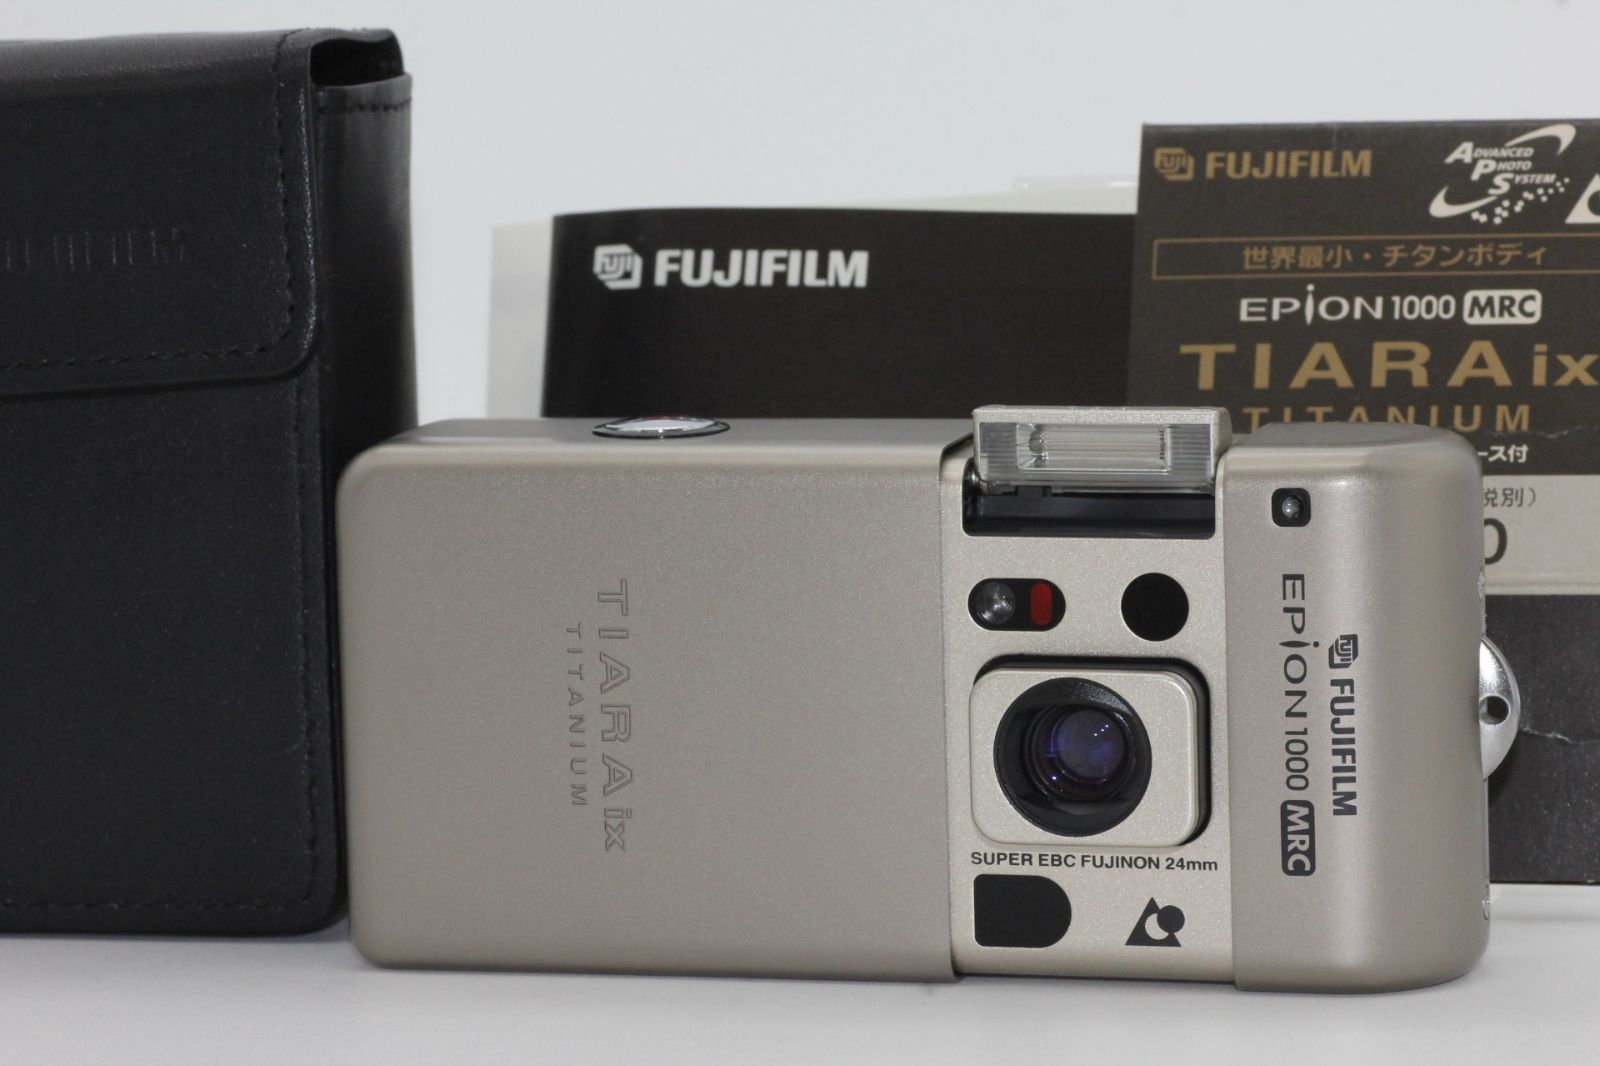 FUJIFILM EPION1000MRC TIARA ix TITANIUM - フィルムカメラ